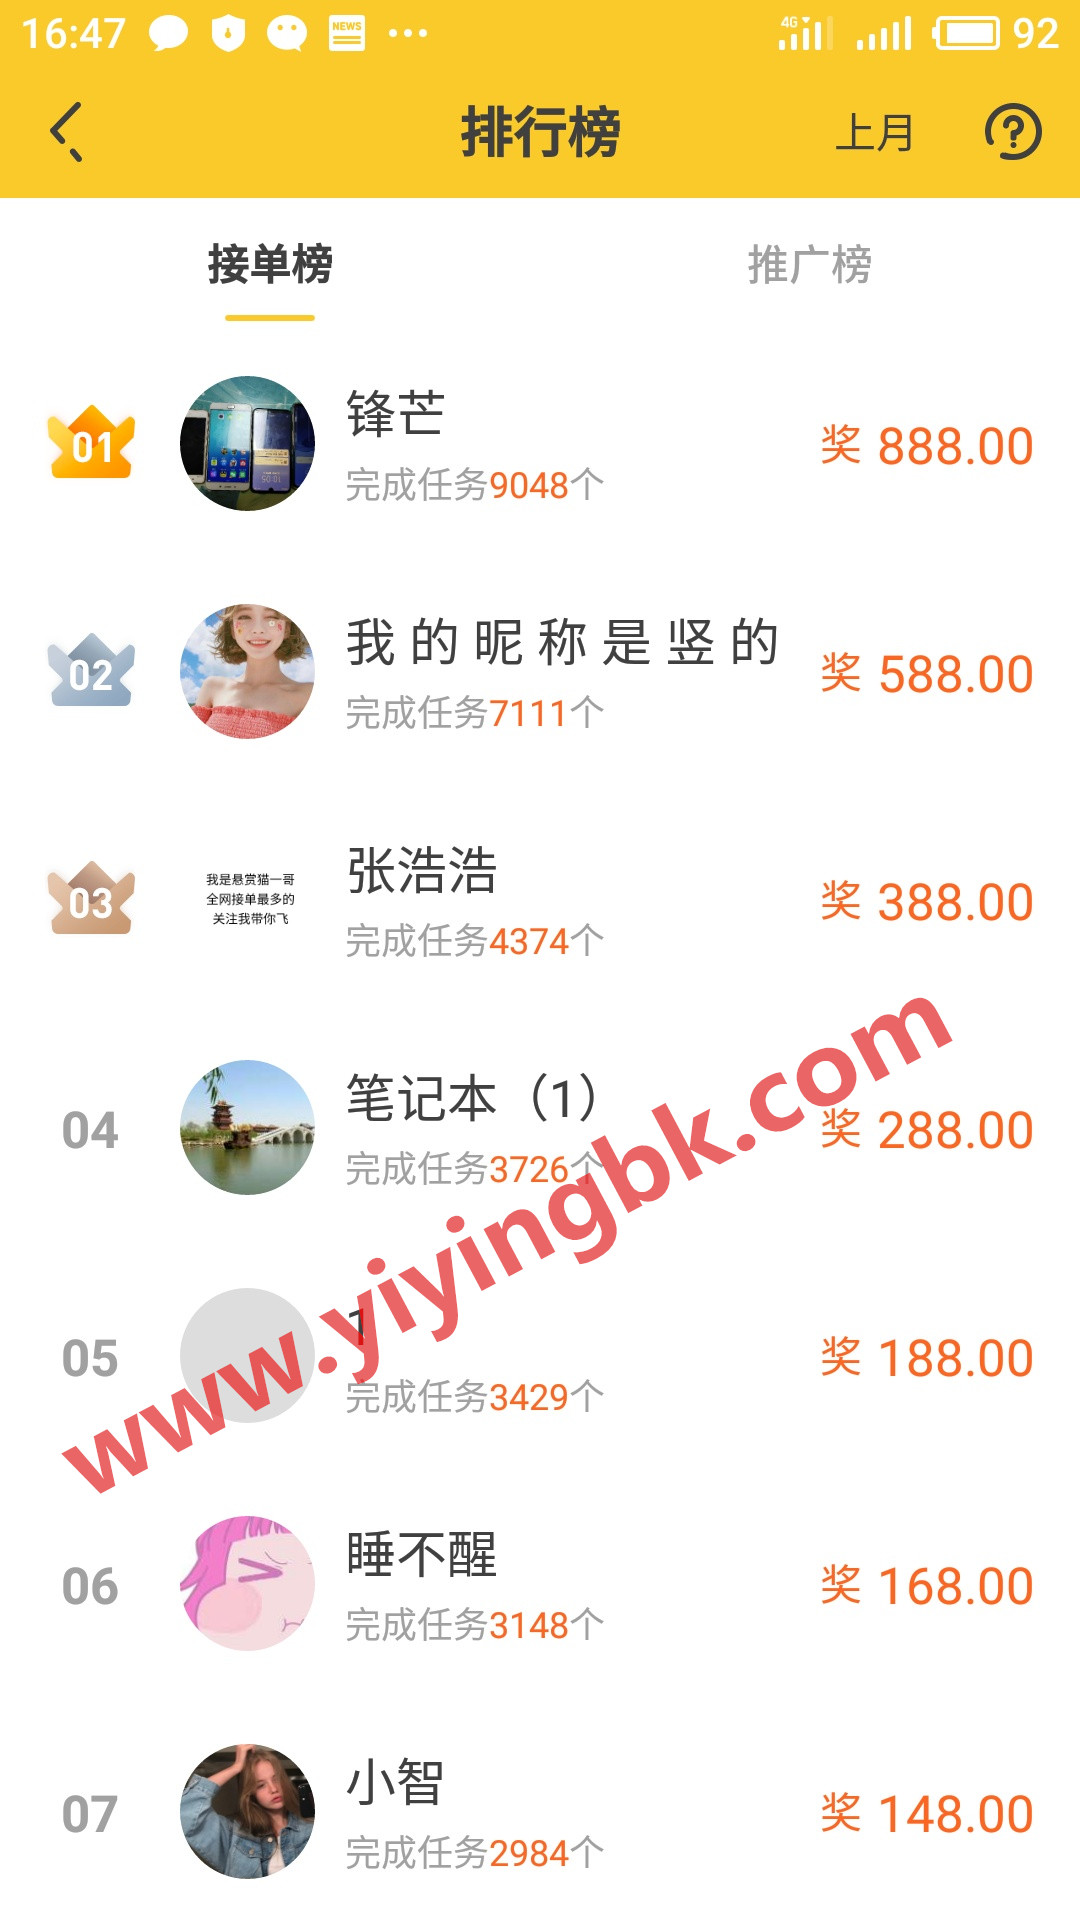 手机正规免费赚钱平台接单榜，每月免费领888元红包，微信和支付宝提现秒到账。www.yiyingbk.com